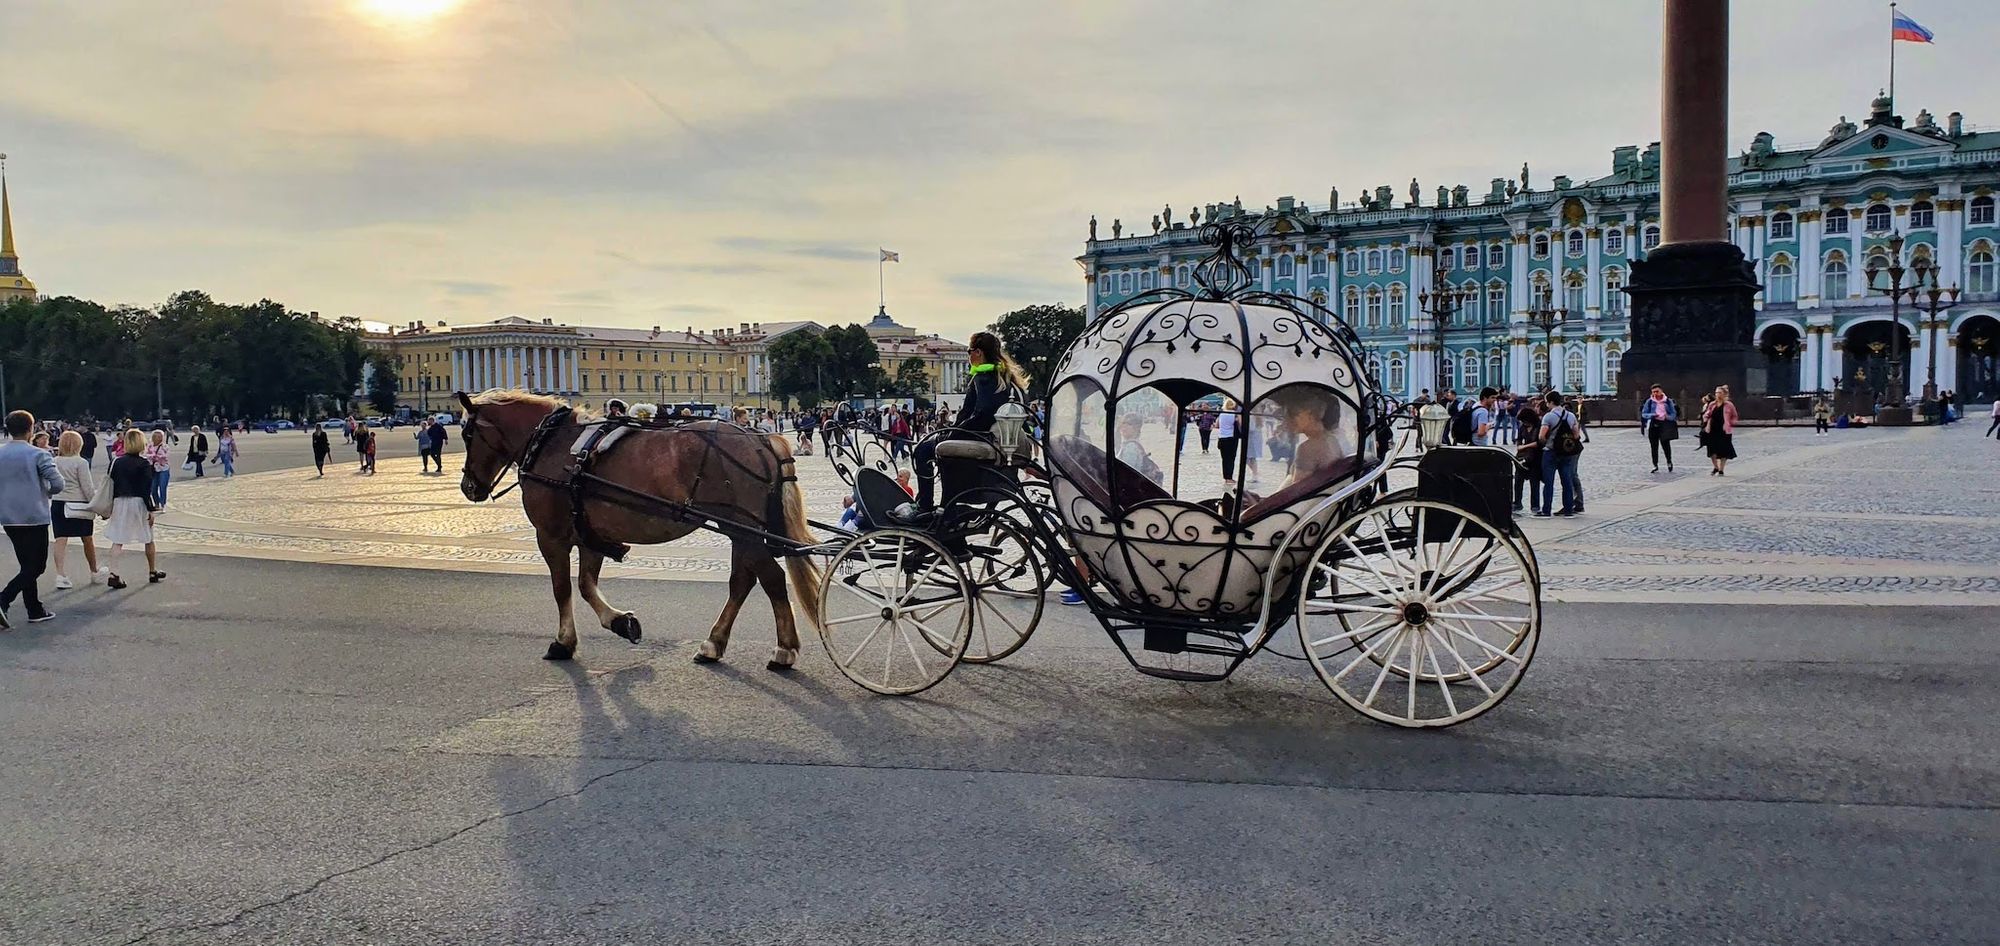  Plaza del palacio de San Petersburgo